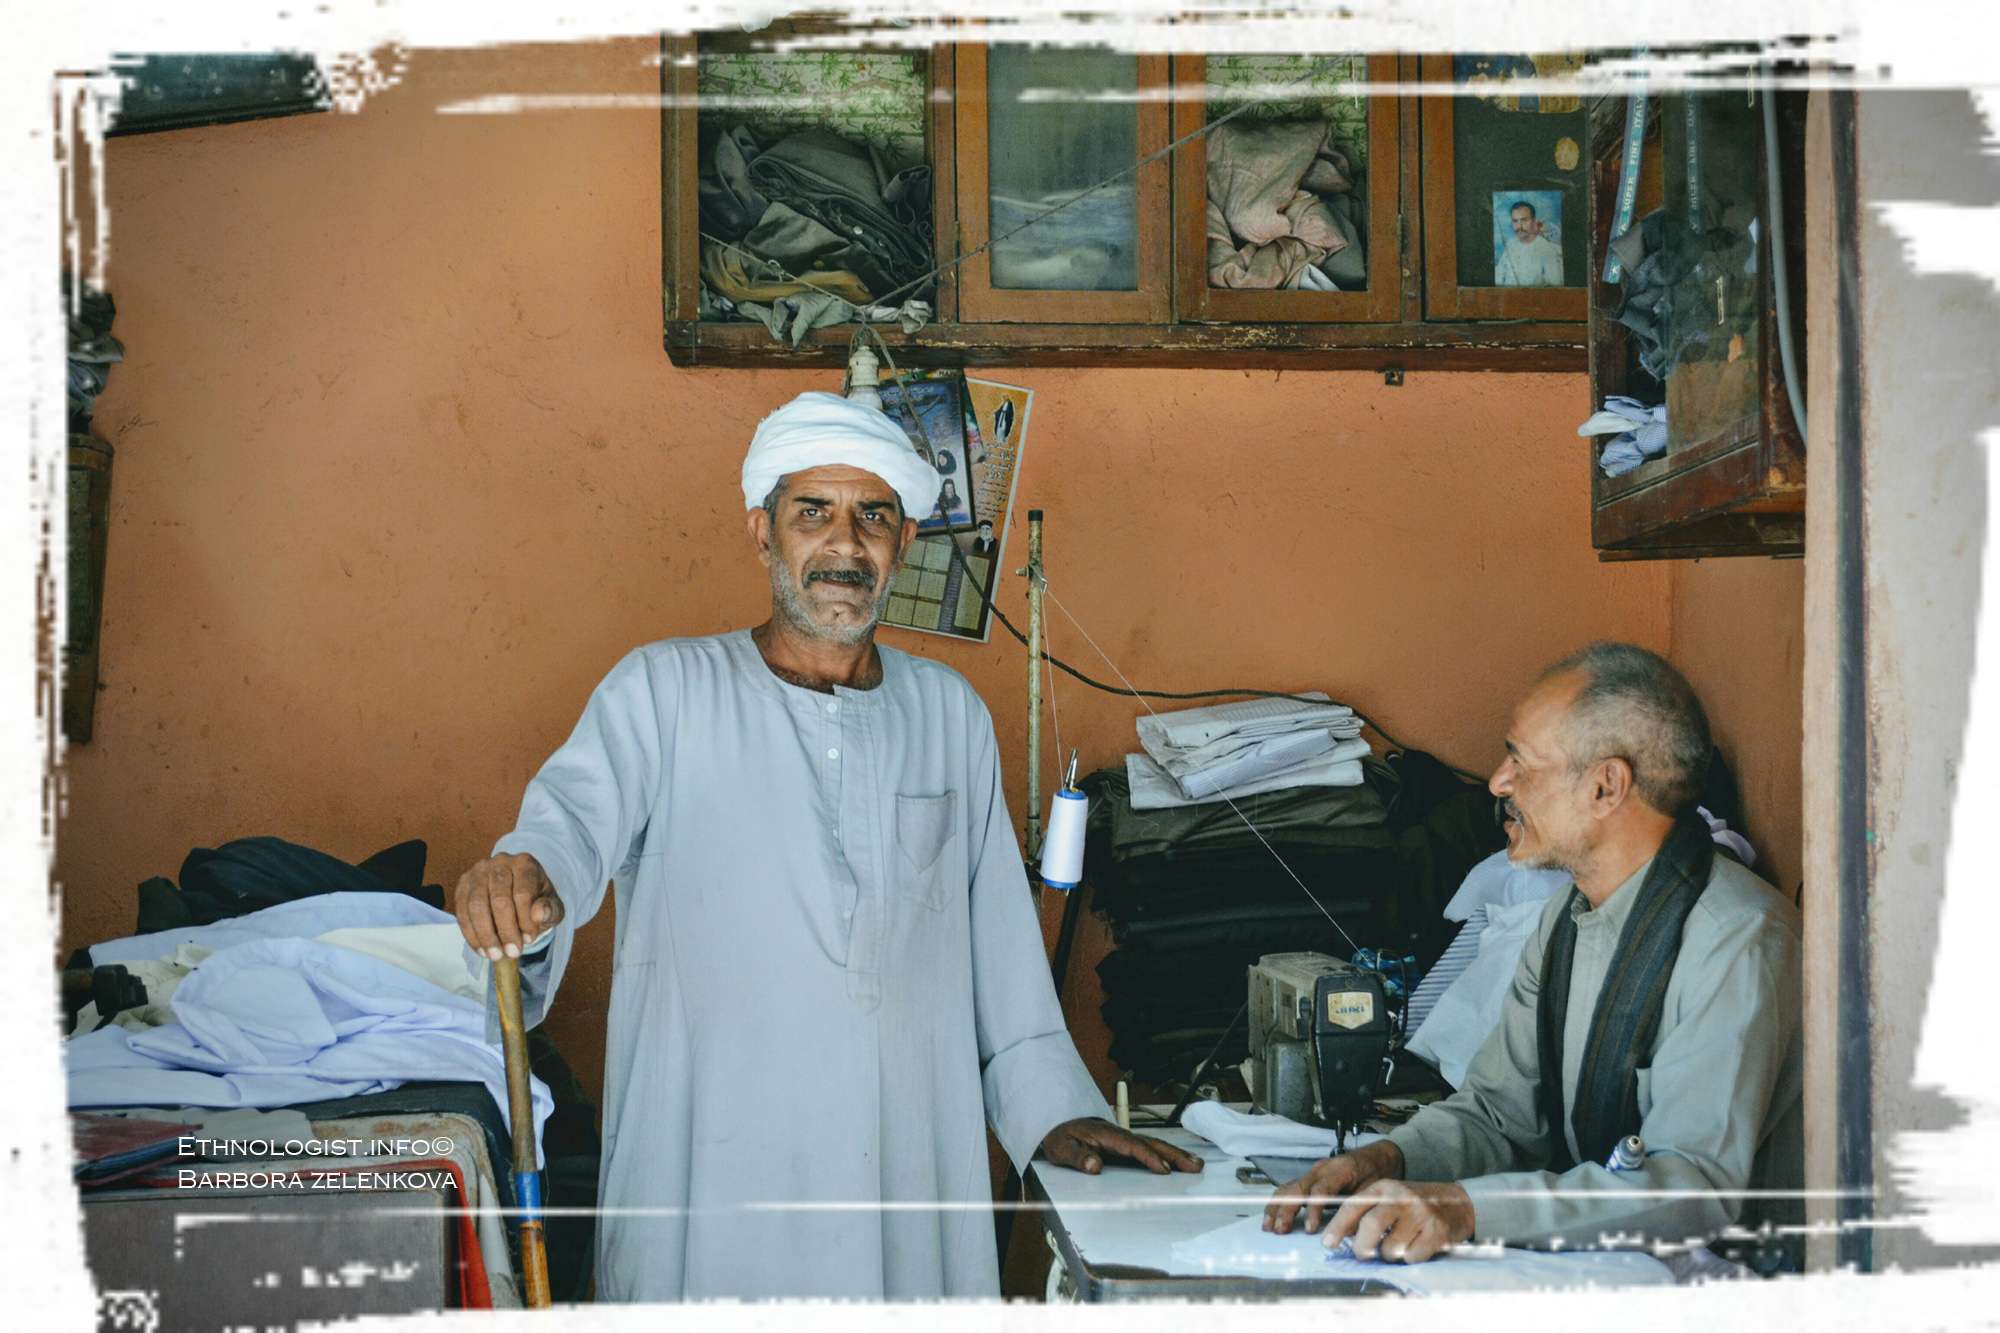 Muslim z káhirské čtvrti Manšínajat Násir na návštěvě u svého přítele, křesťanského krejčího. Foto: Barbora Zelenková, 2011.